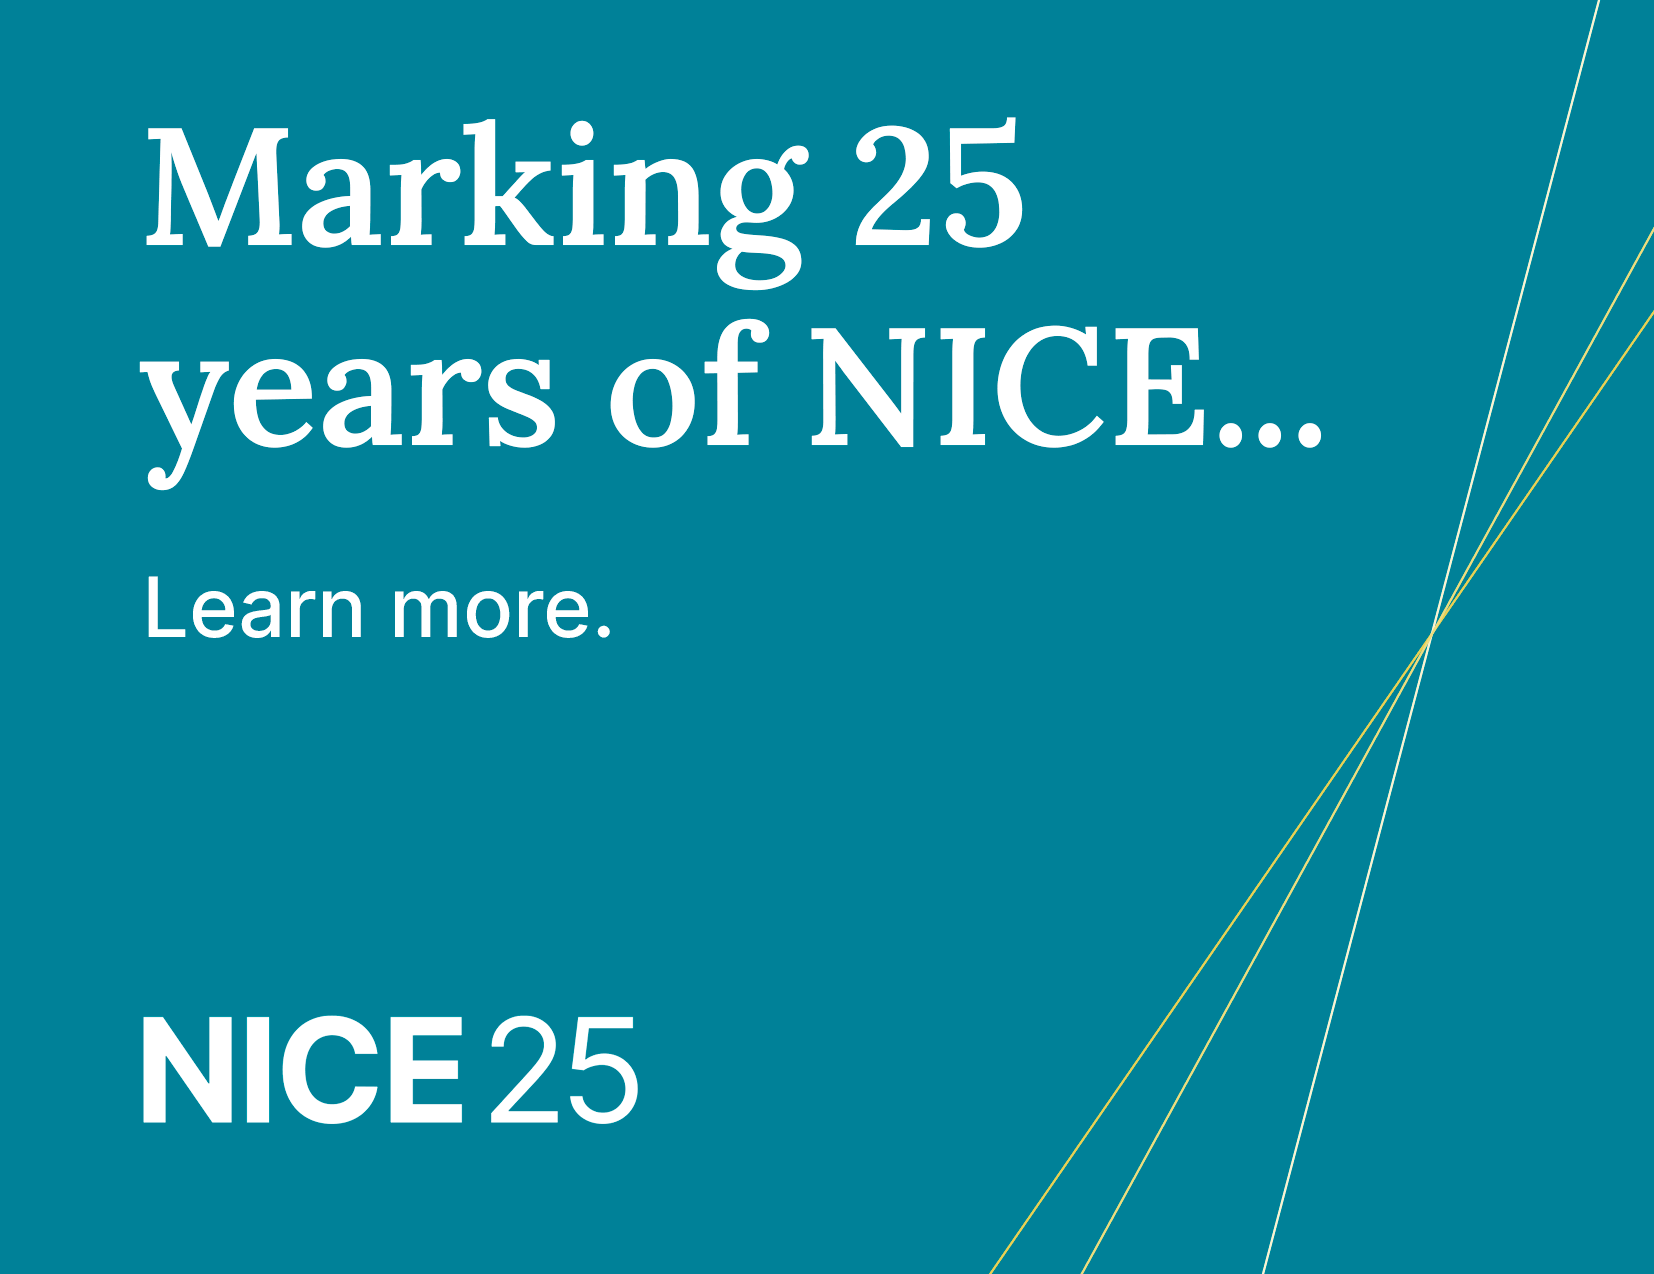 了解更多关于我们如何纪念NICE 25周年的信息